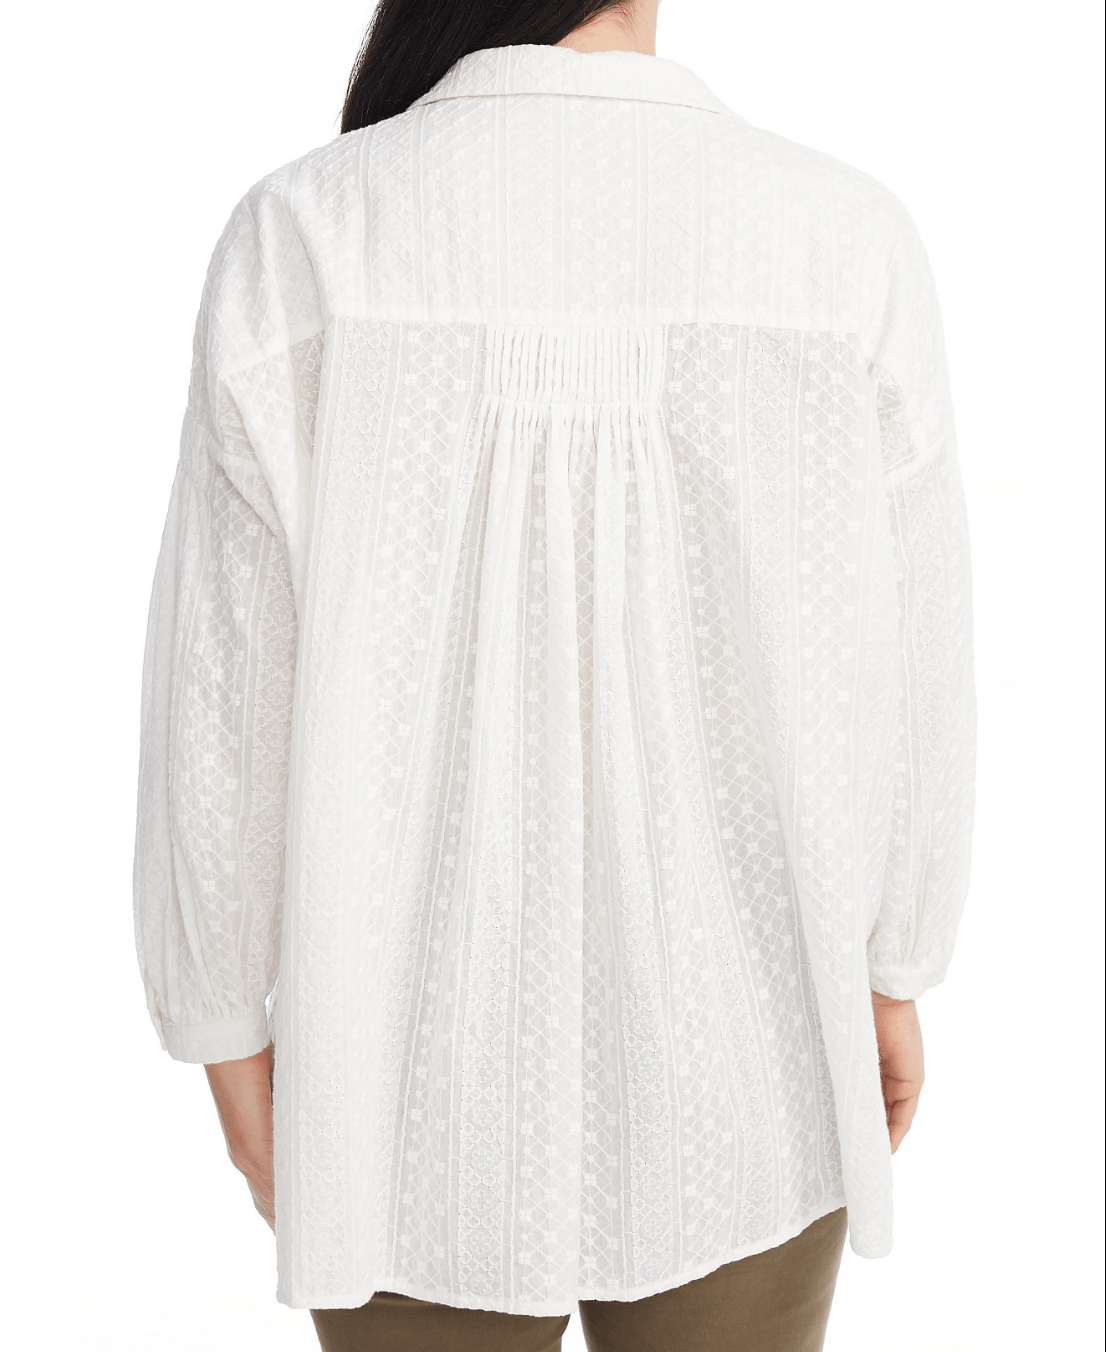 Brave + True White Embroidered Duchess Shirt BT6737-2